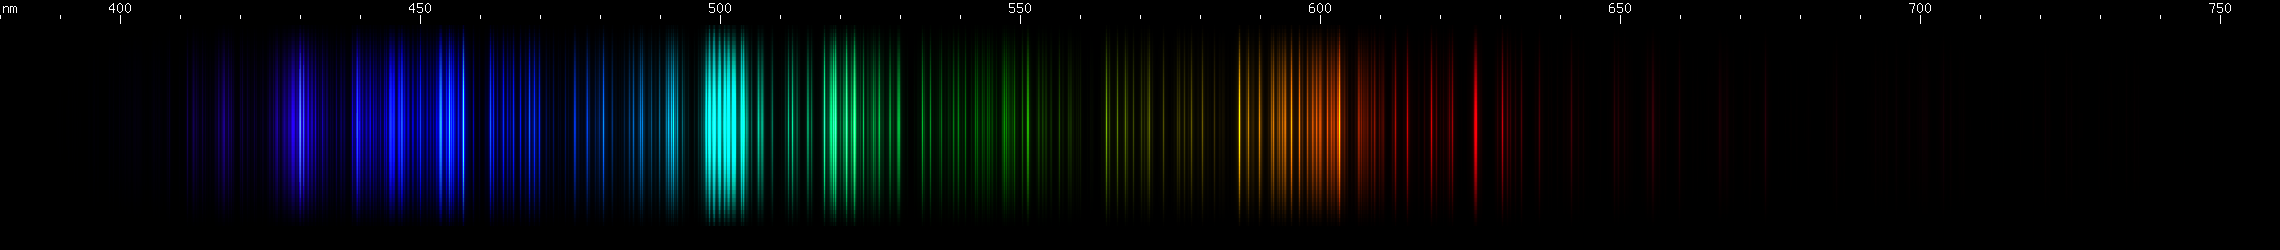 Spectral lines of Titanium.